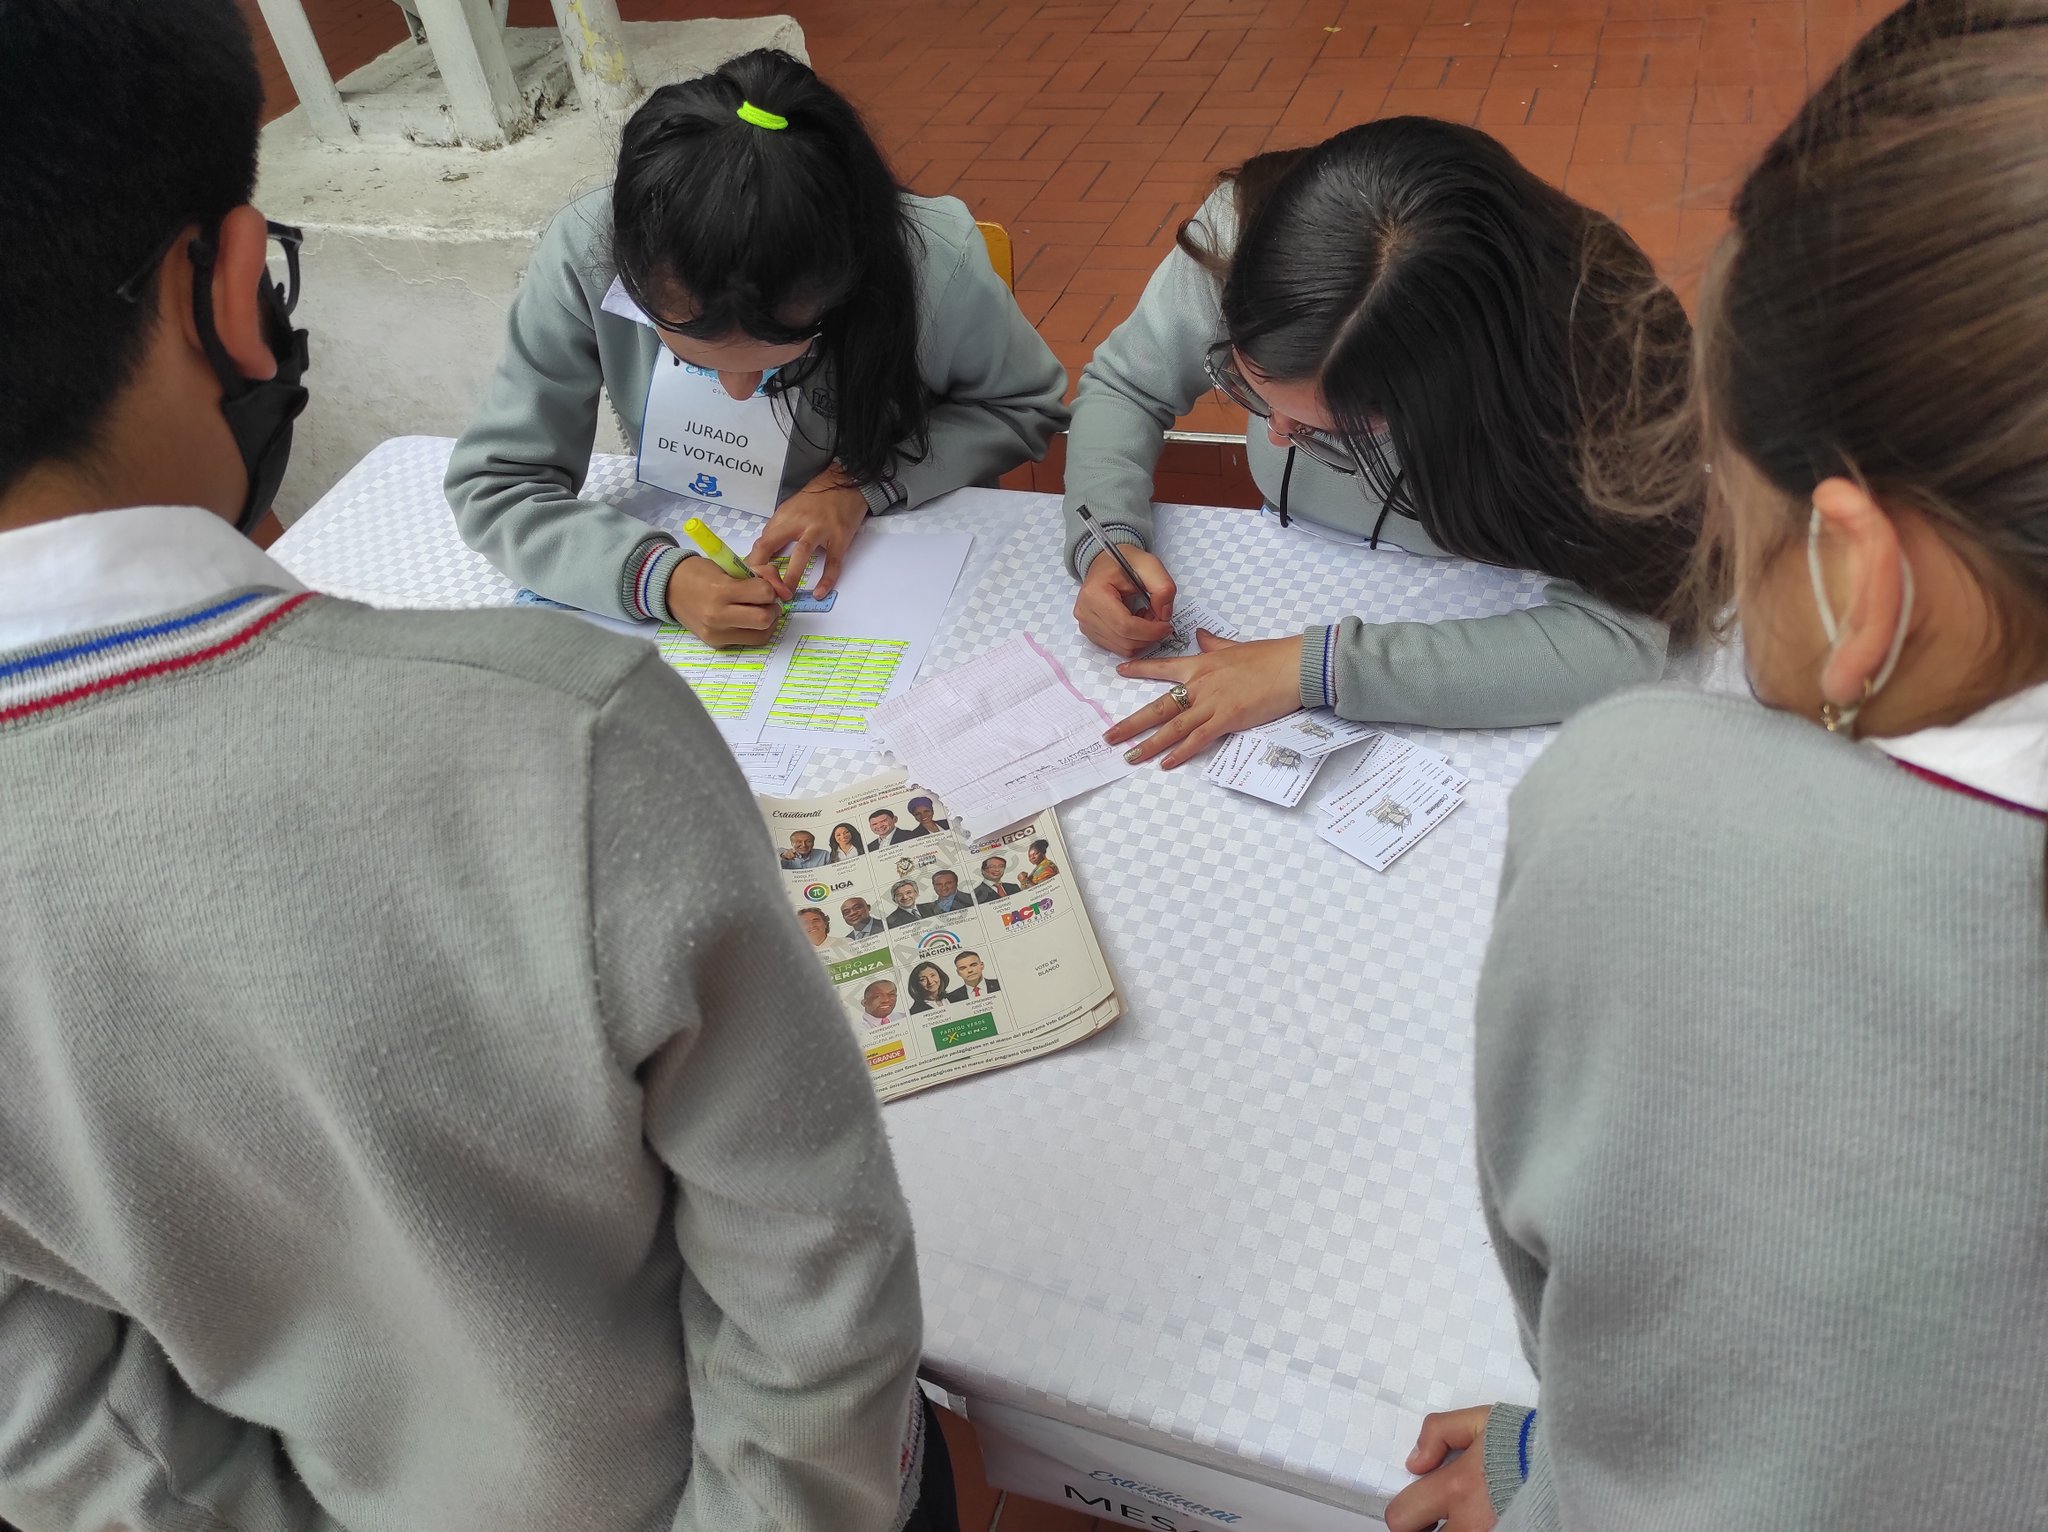 Niños y niñas votan en colegio distrital Danilo Cifuentes, de Bogotá, con material electoral idéntico al original.